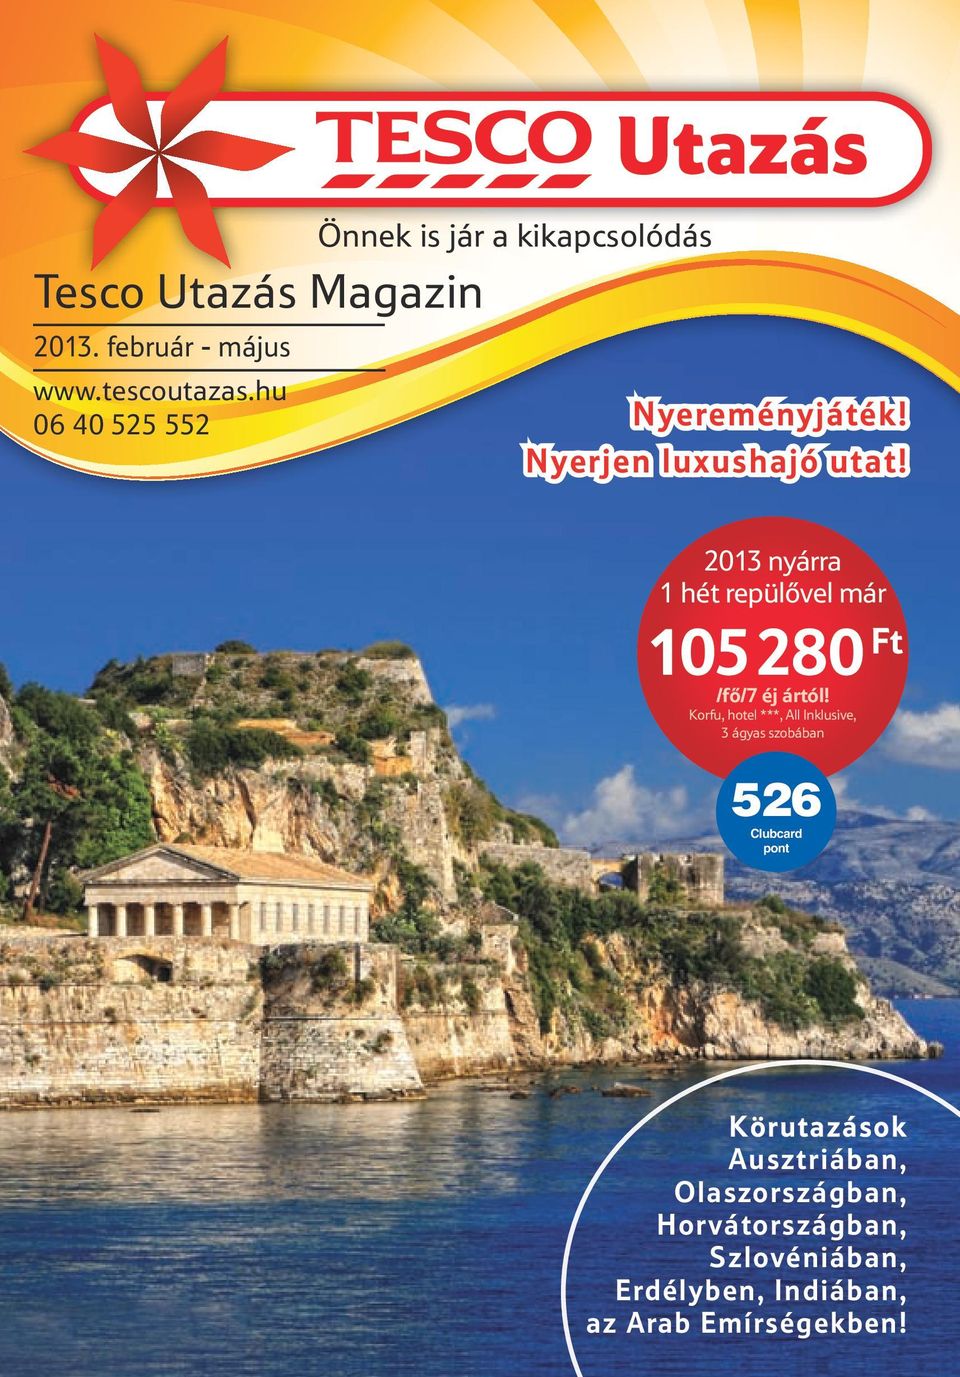 Tesco Utazás Magazin. 526 Clubcard pont. Önnek is jár a kikapcsolódás  február - május - PDF Free Download